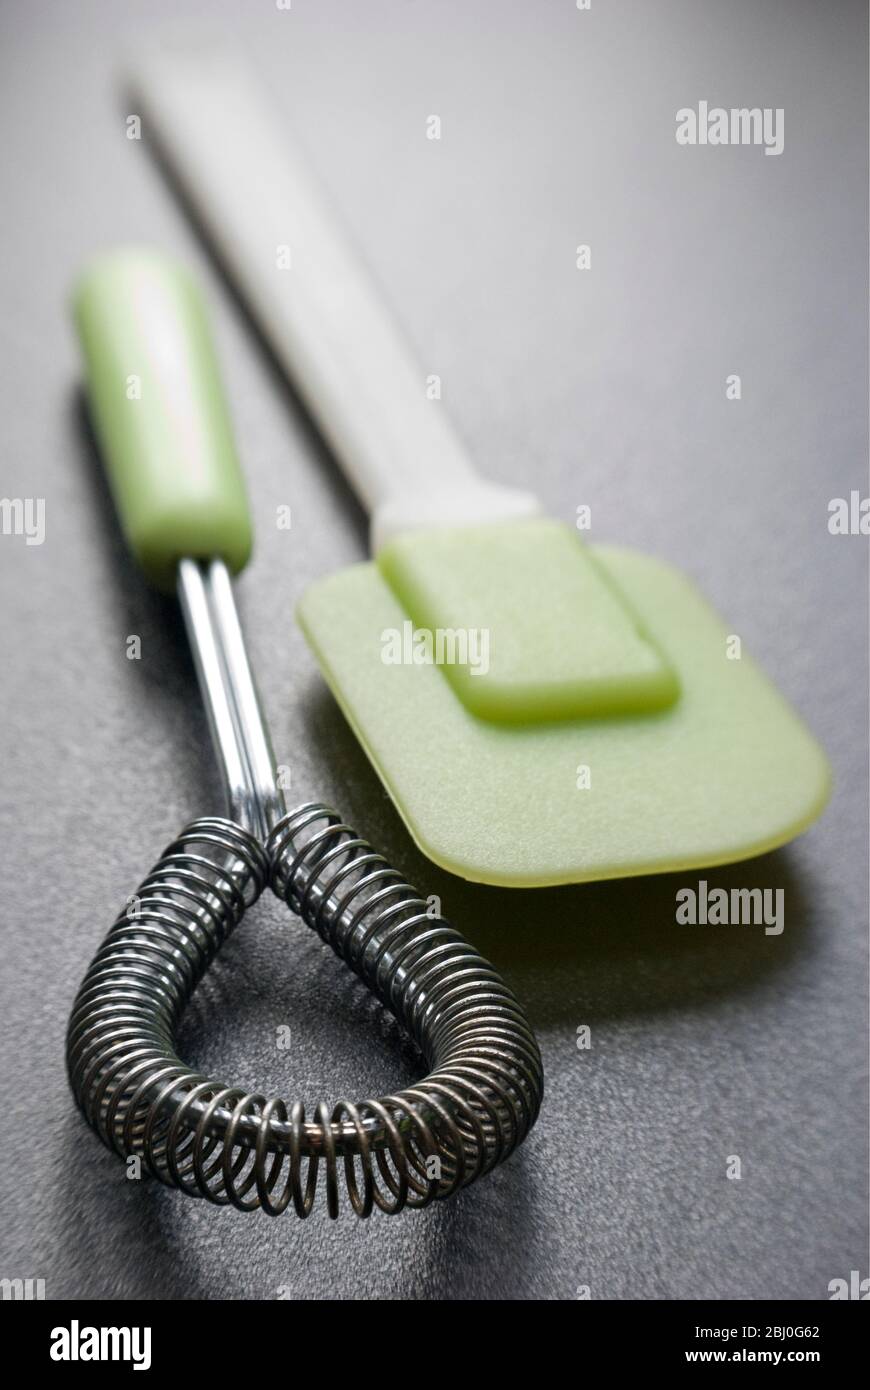 Equipement de cuisine, fouet métallique et spatule verte en plastique et silicone - Banque D'Images